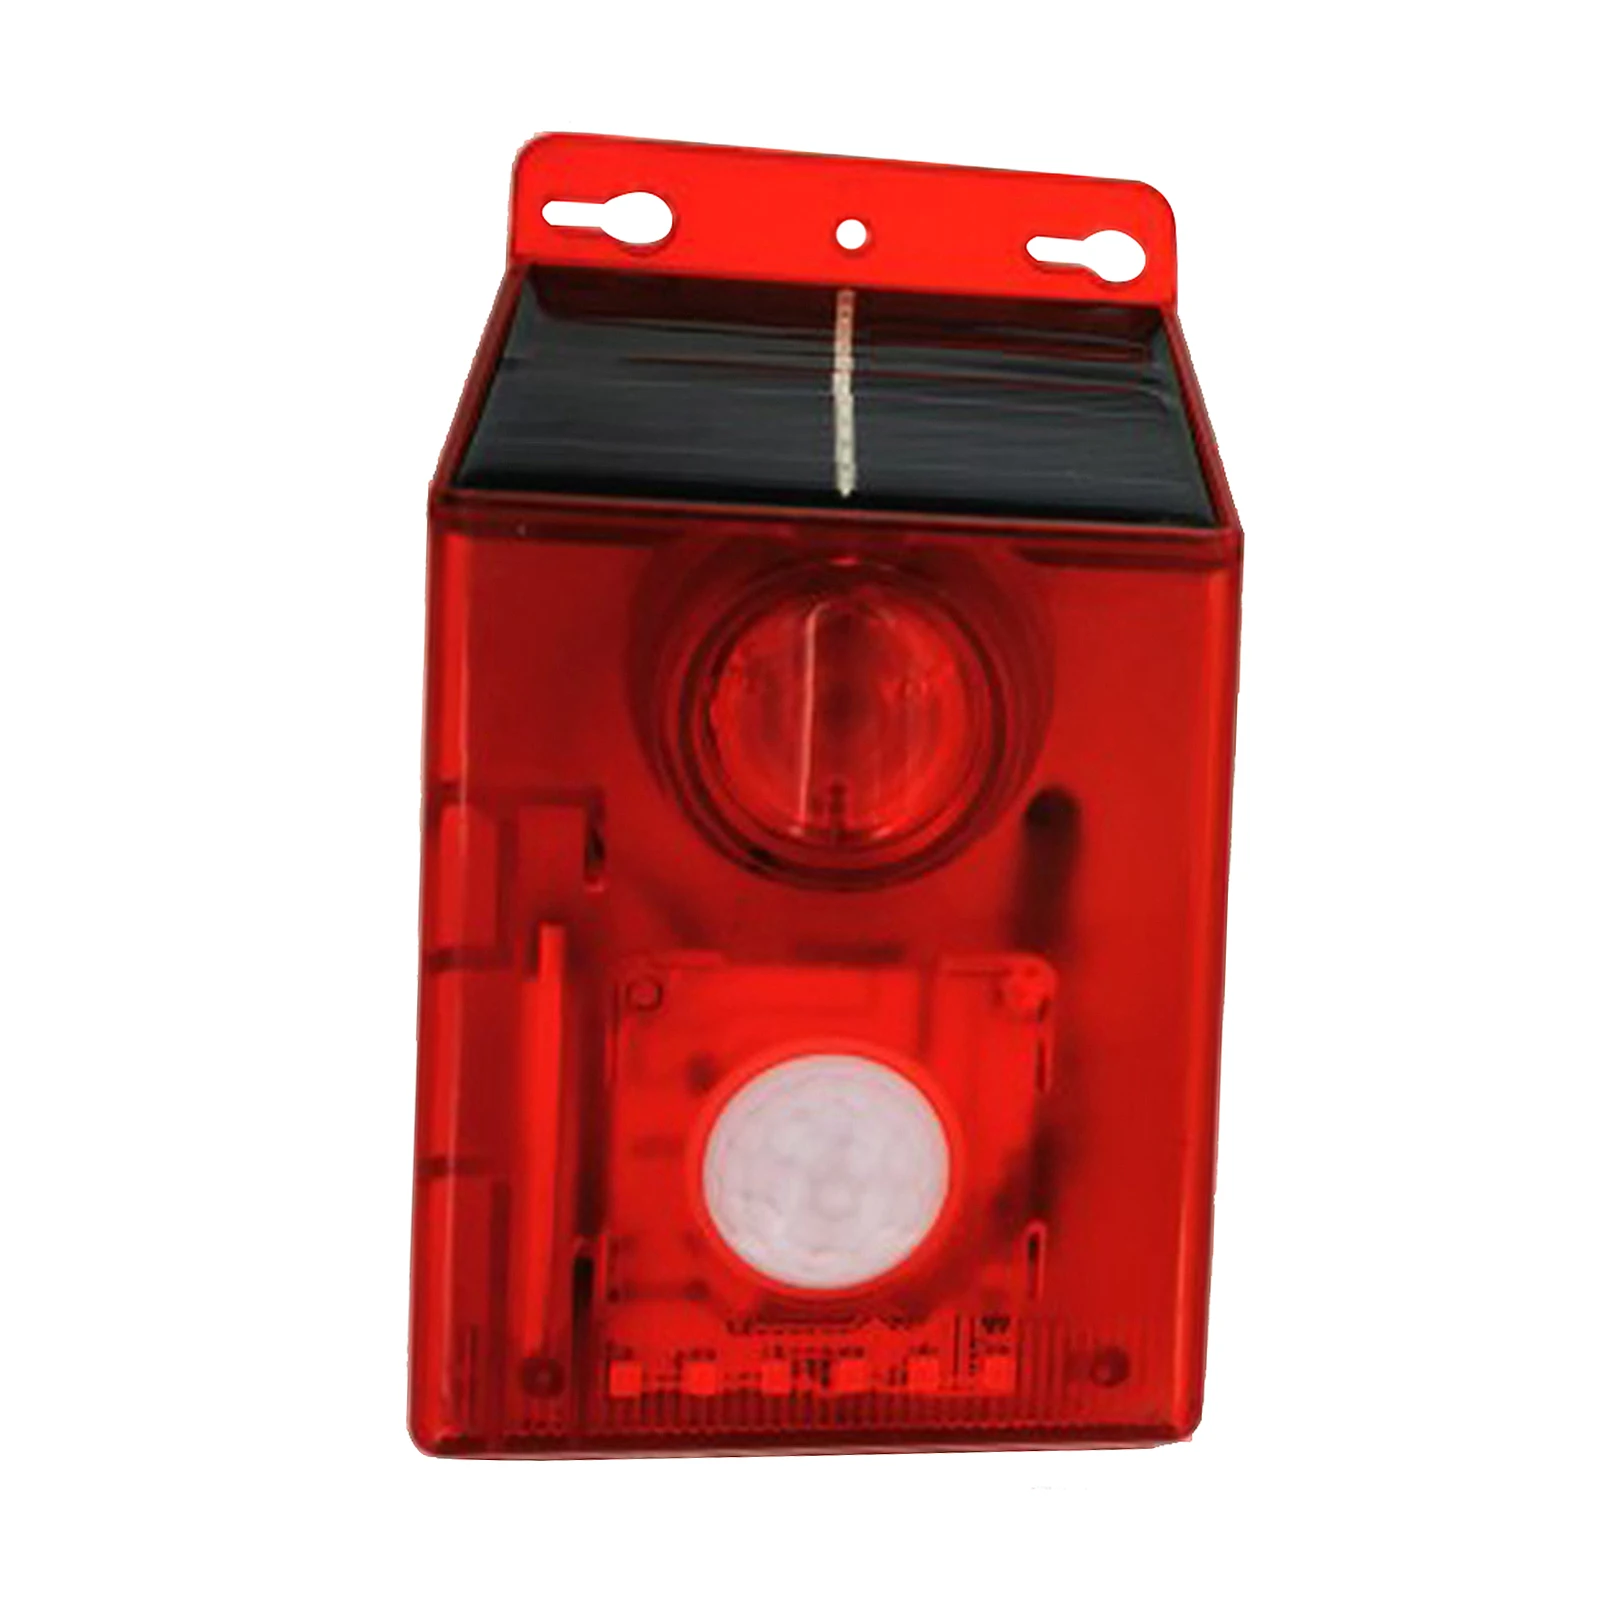 Solar Sound Alarm Lamp Animal Anti-theft Siren Flashing 6-Led Motion Sensor